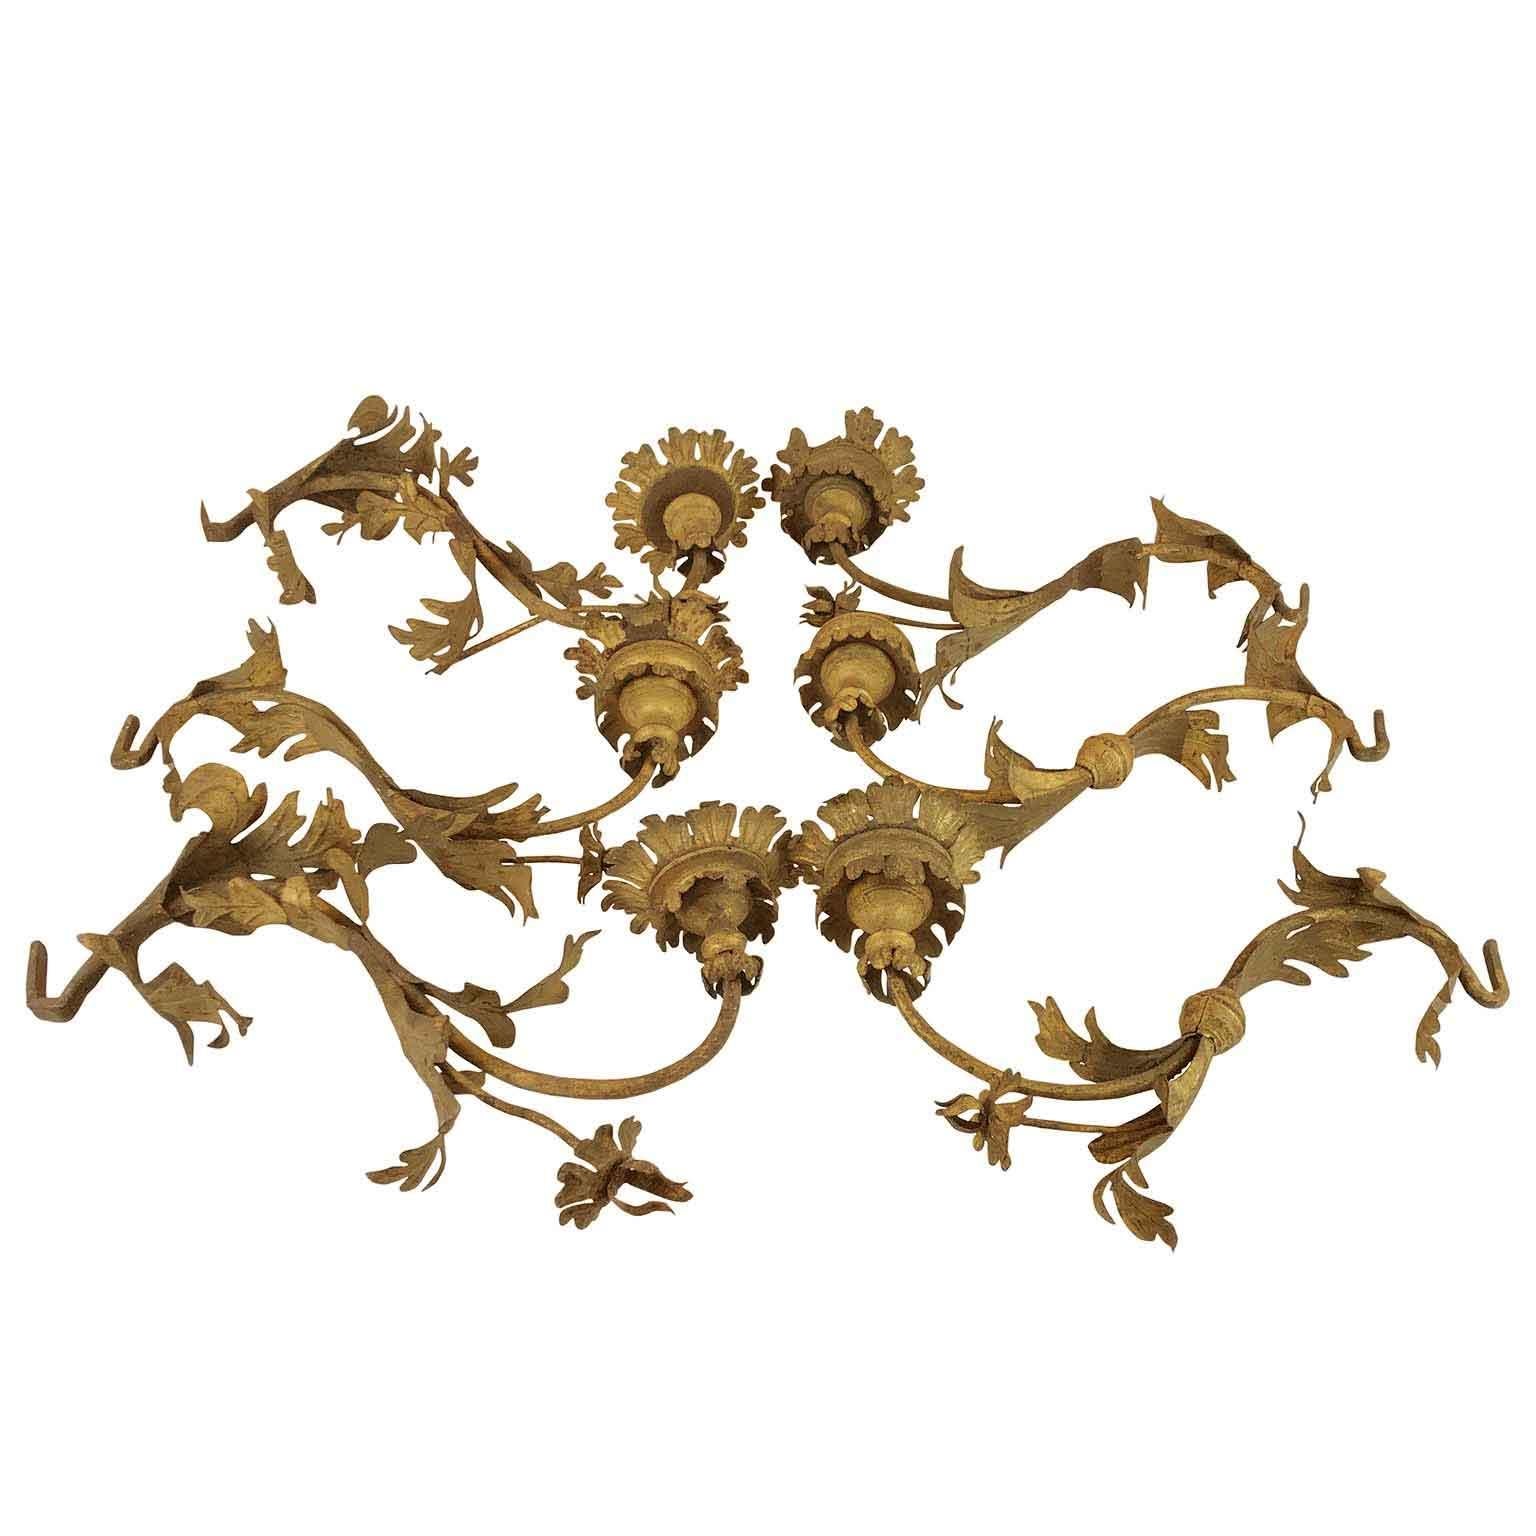 En provenance d'Italie du Nord, un rare ensemble de six bras en fer forgé doré du XVIIIe siècle, bougeoirs, supports de lanterne suspendue pouvant servir d'appliques, à condition de les câbler.  Ces bras en fer sont entièrement fabriqués à la main